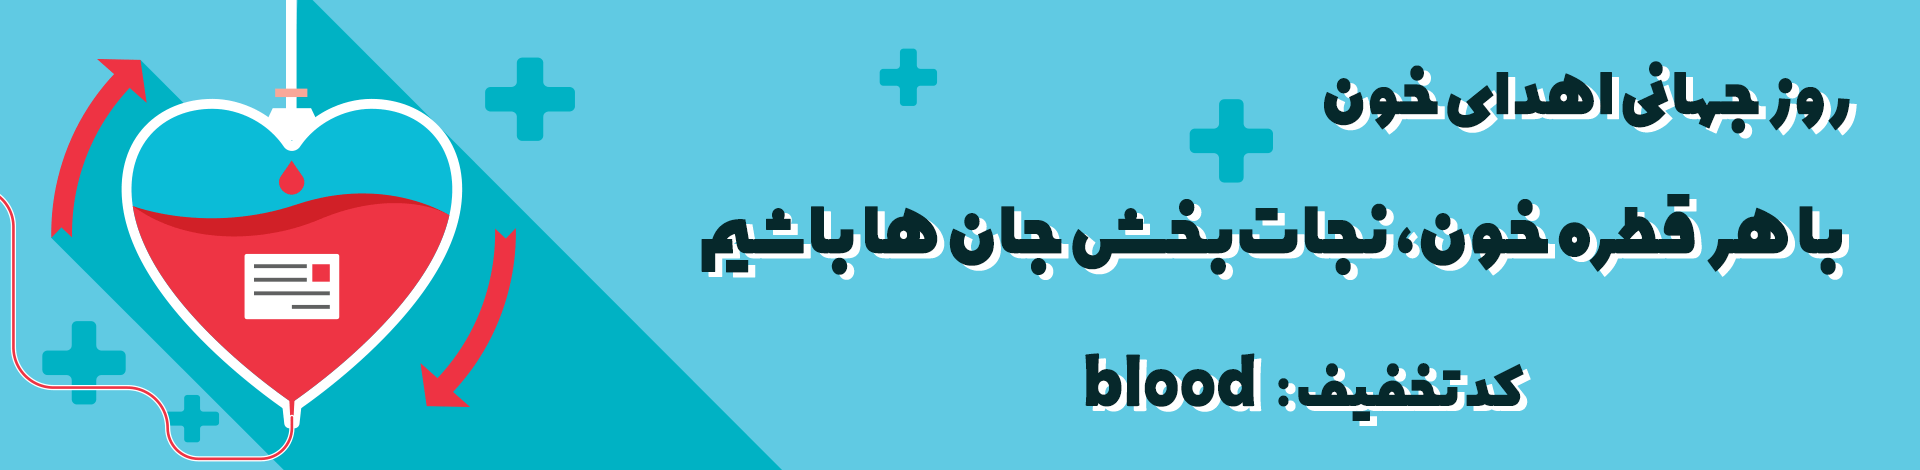 روز جهانی اهدا خون- پزشکت